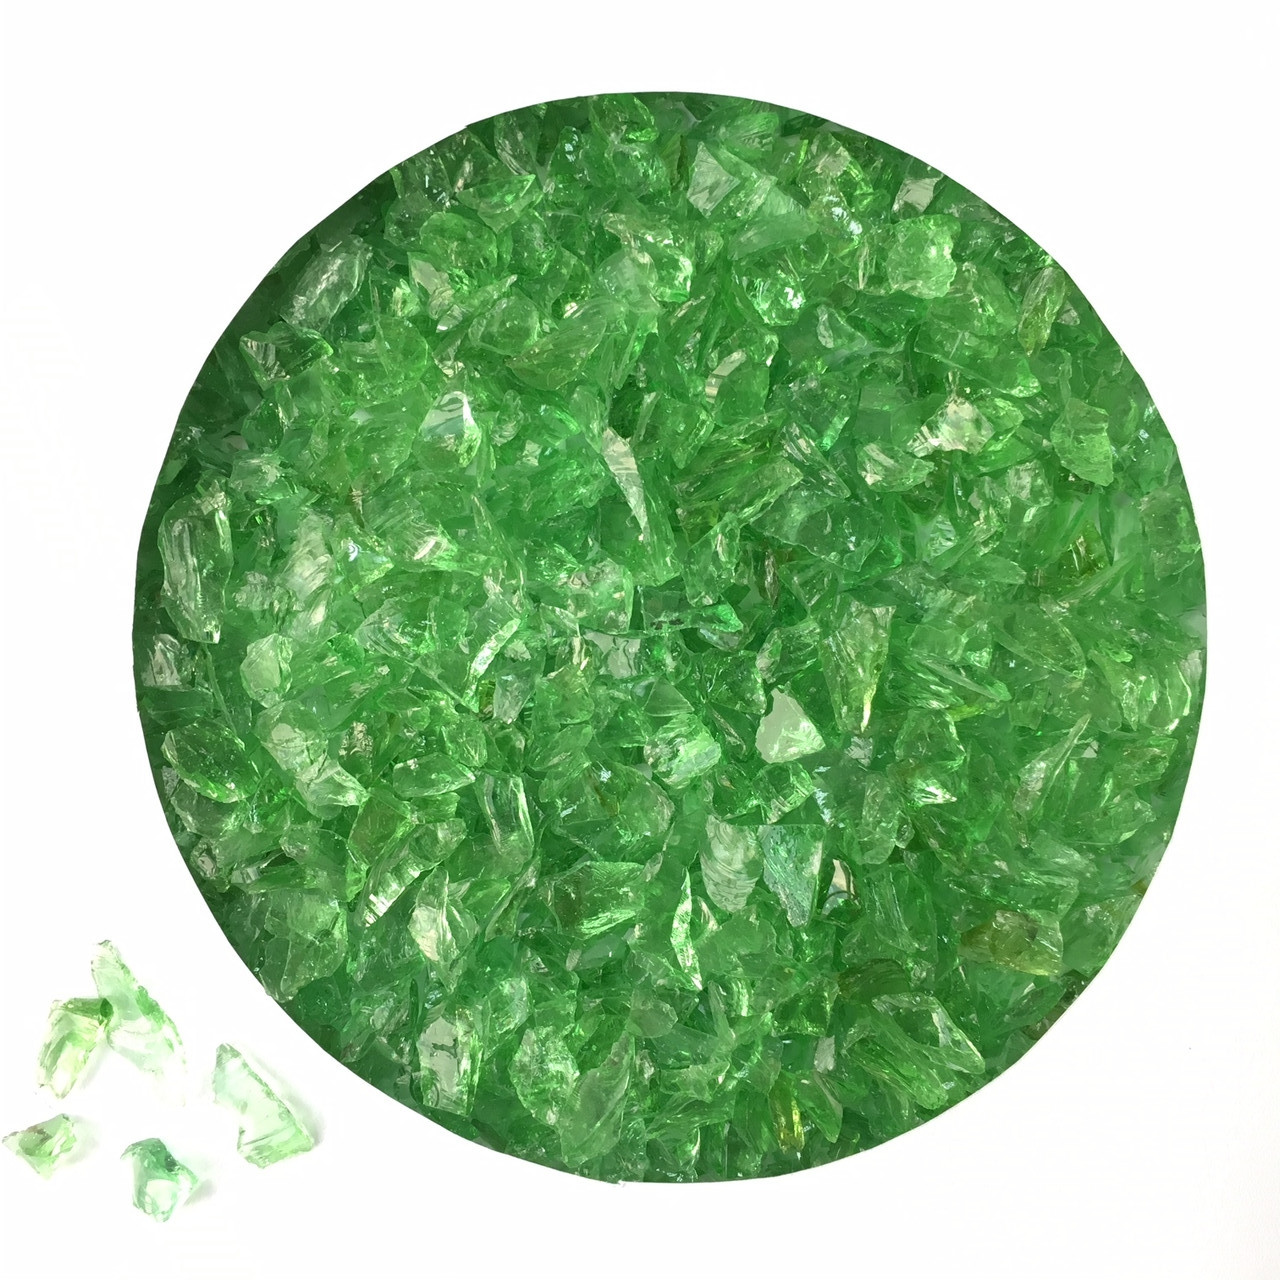 Скло кольорове від Daixi Industry.Фракція 3 - 6 мм. Колір - зелений. Скло кольорове зелене